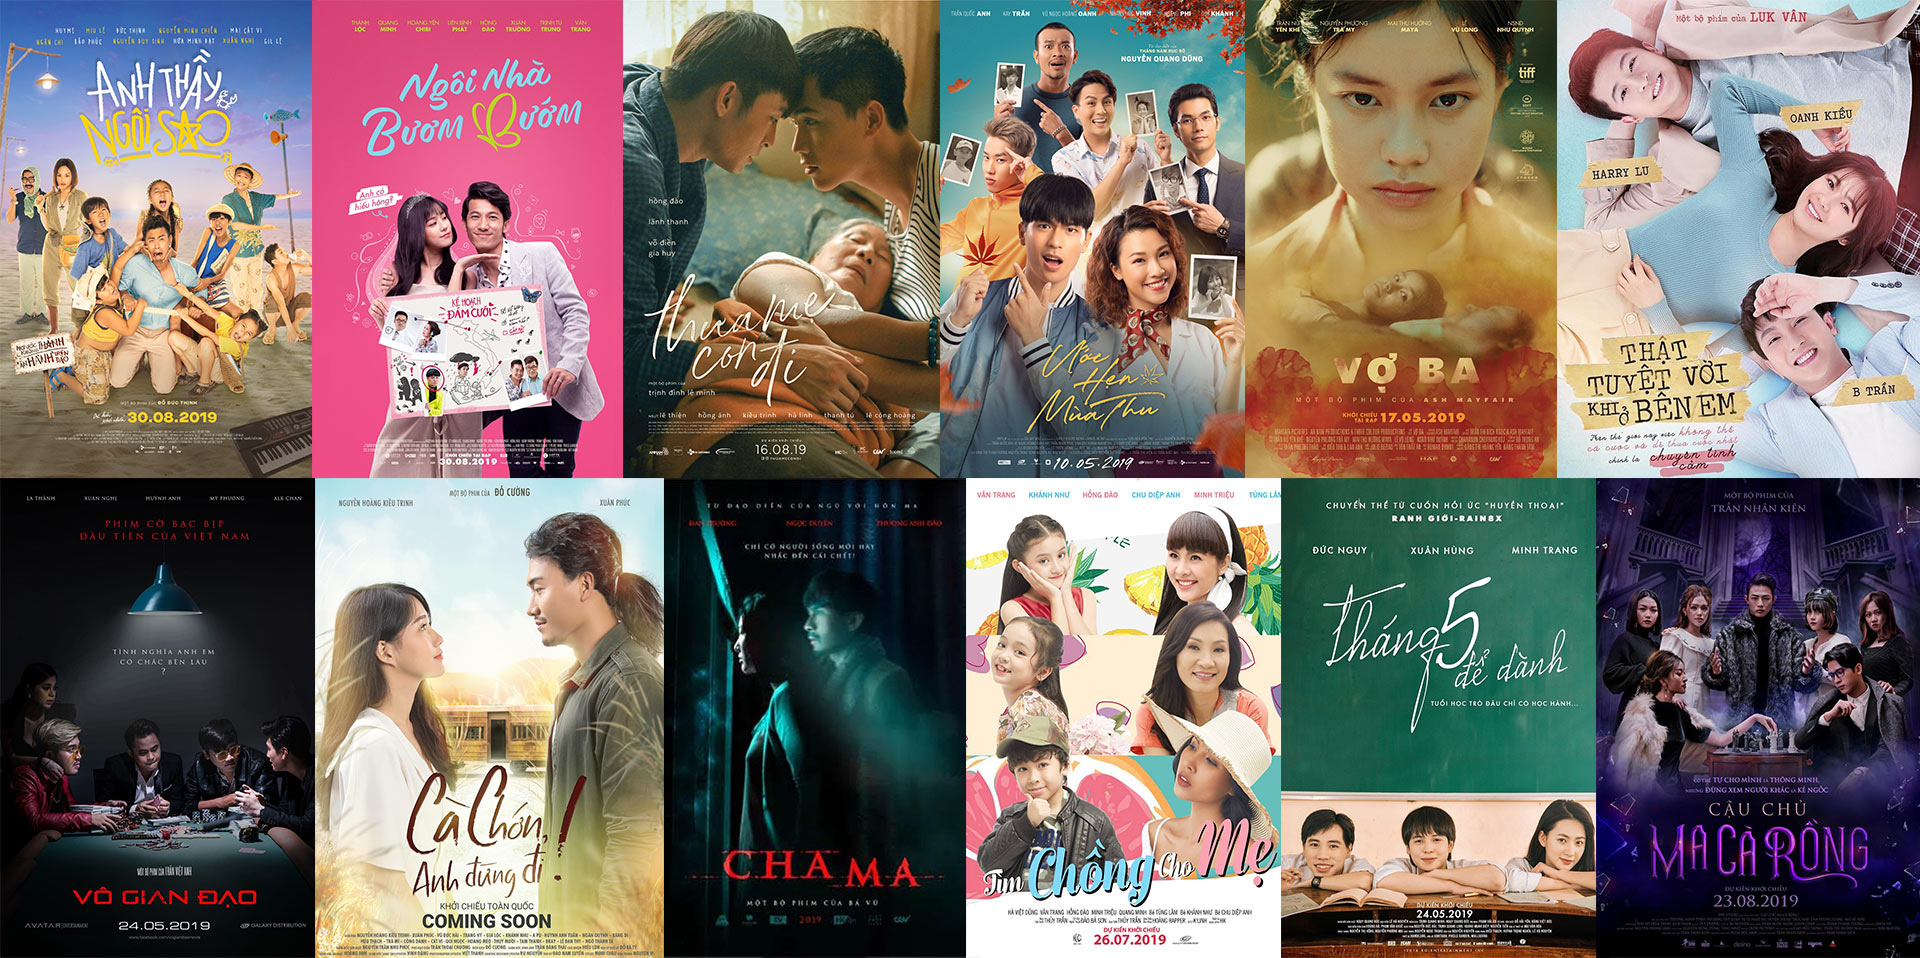 Vietnamese films suffer ‘profitless summer’: box office report